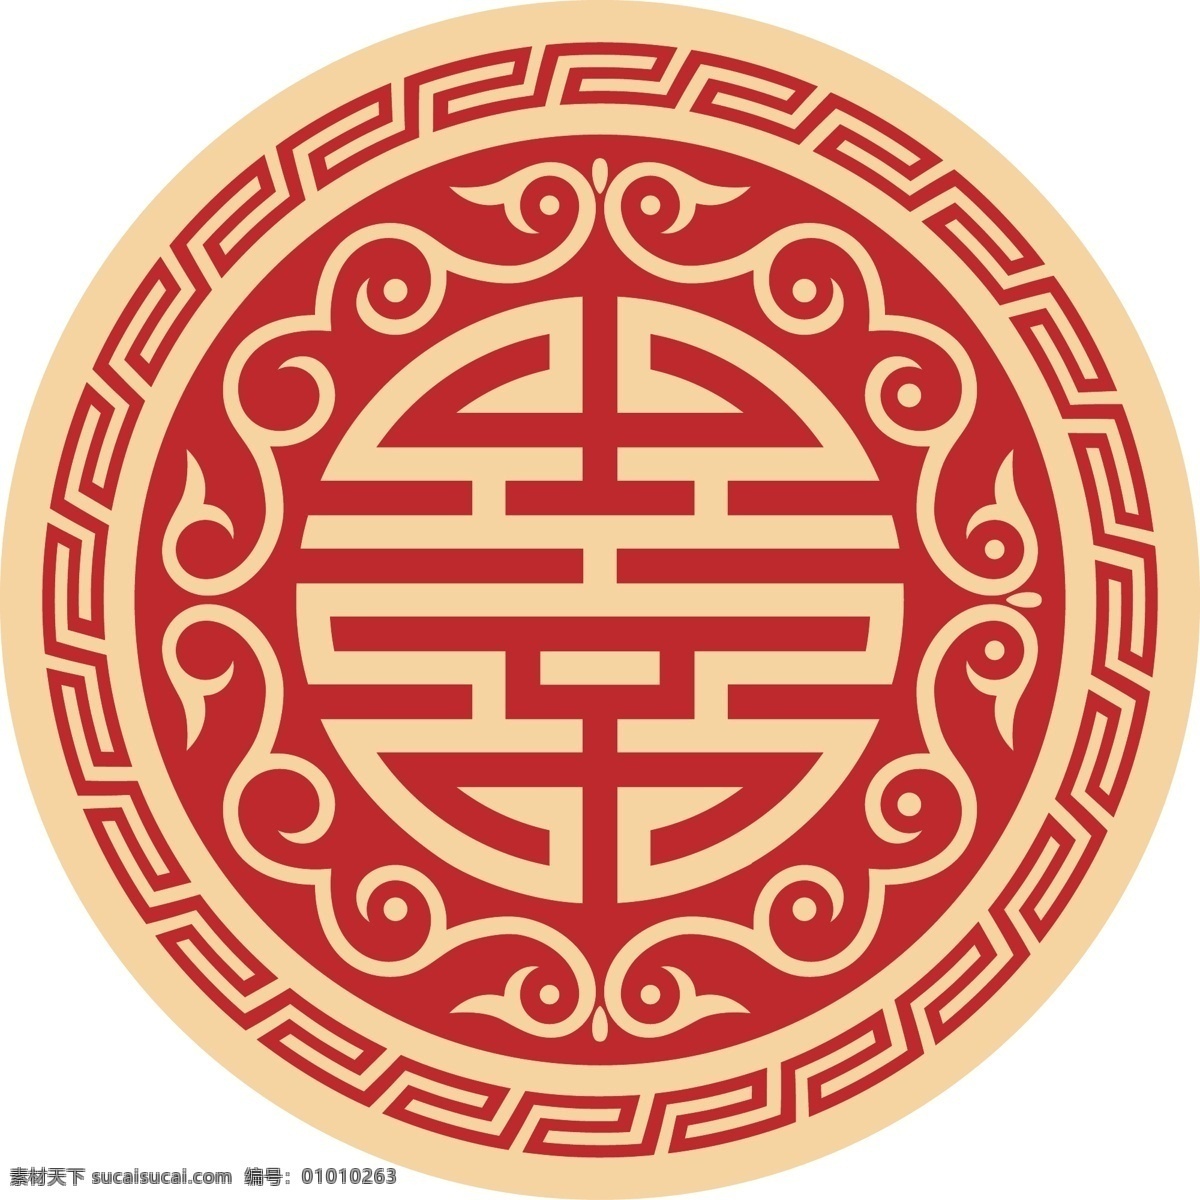 中国 传统 红 底 金字 logo 婚礼请柬 结婚请柬 结婚logo 婚礼logo 婚礼 红色